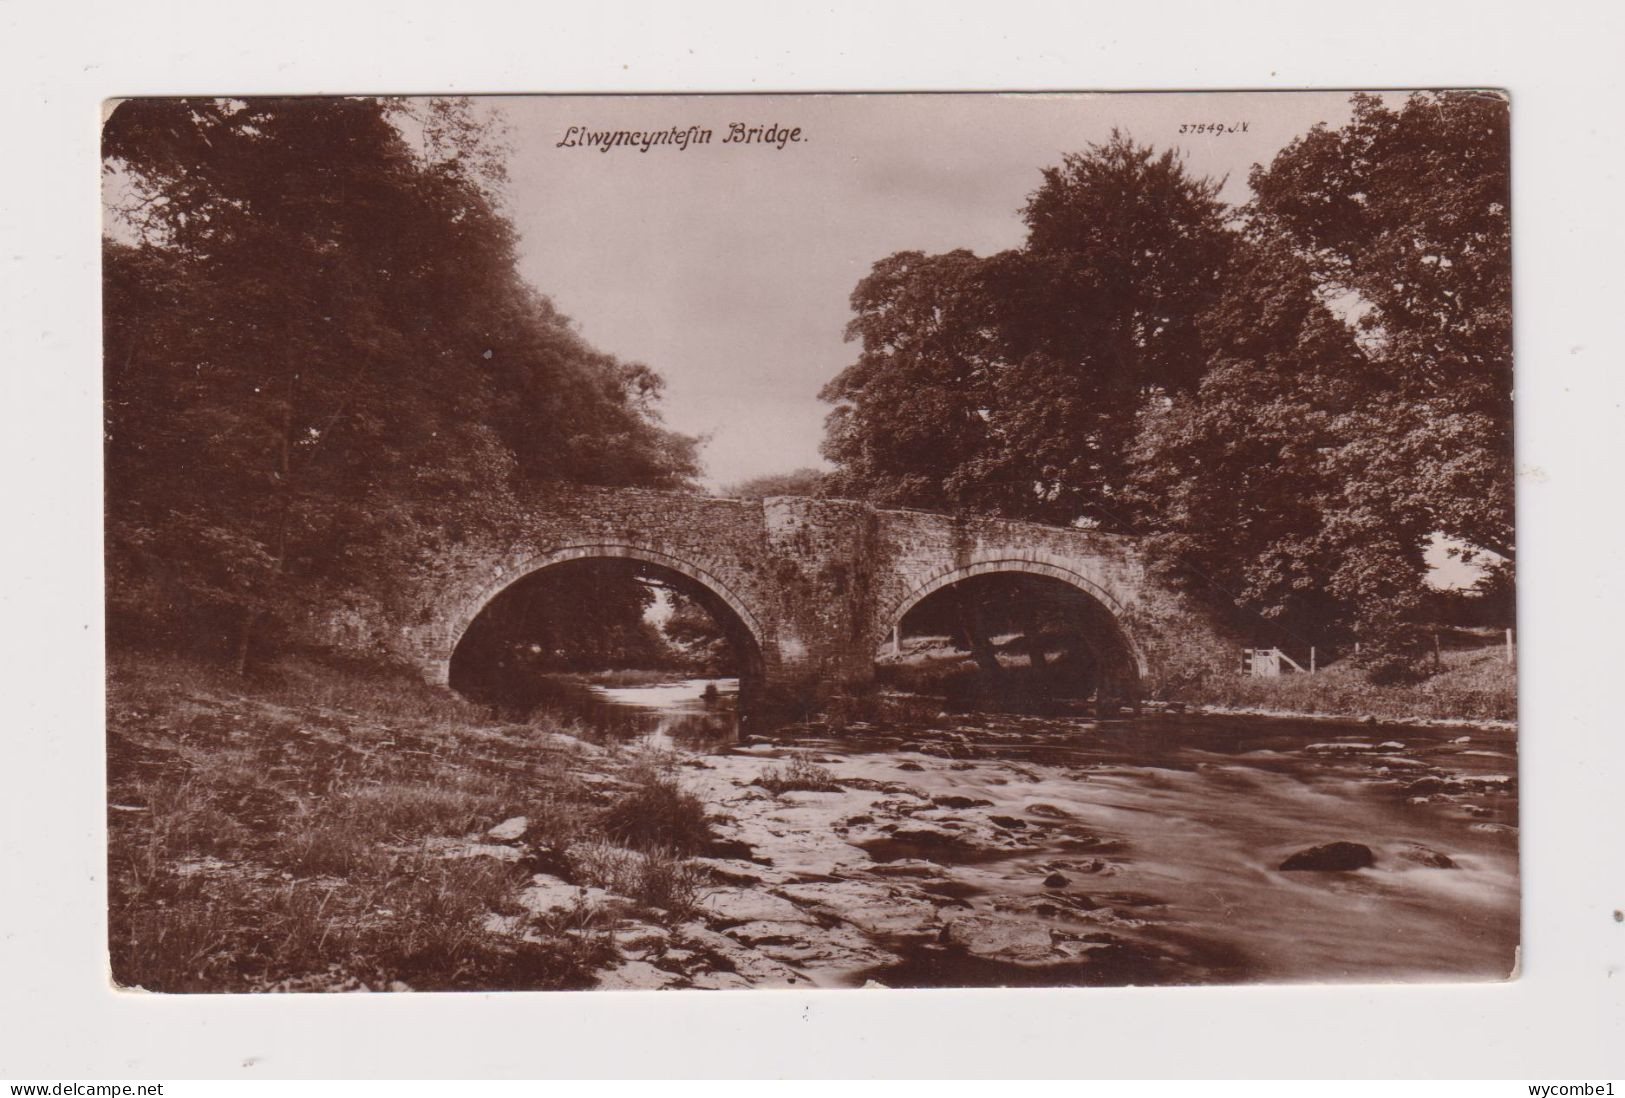 WALES - Llwyncyntefin Bridge Unused Vintage Postcard - Breconshire